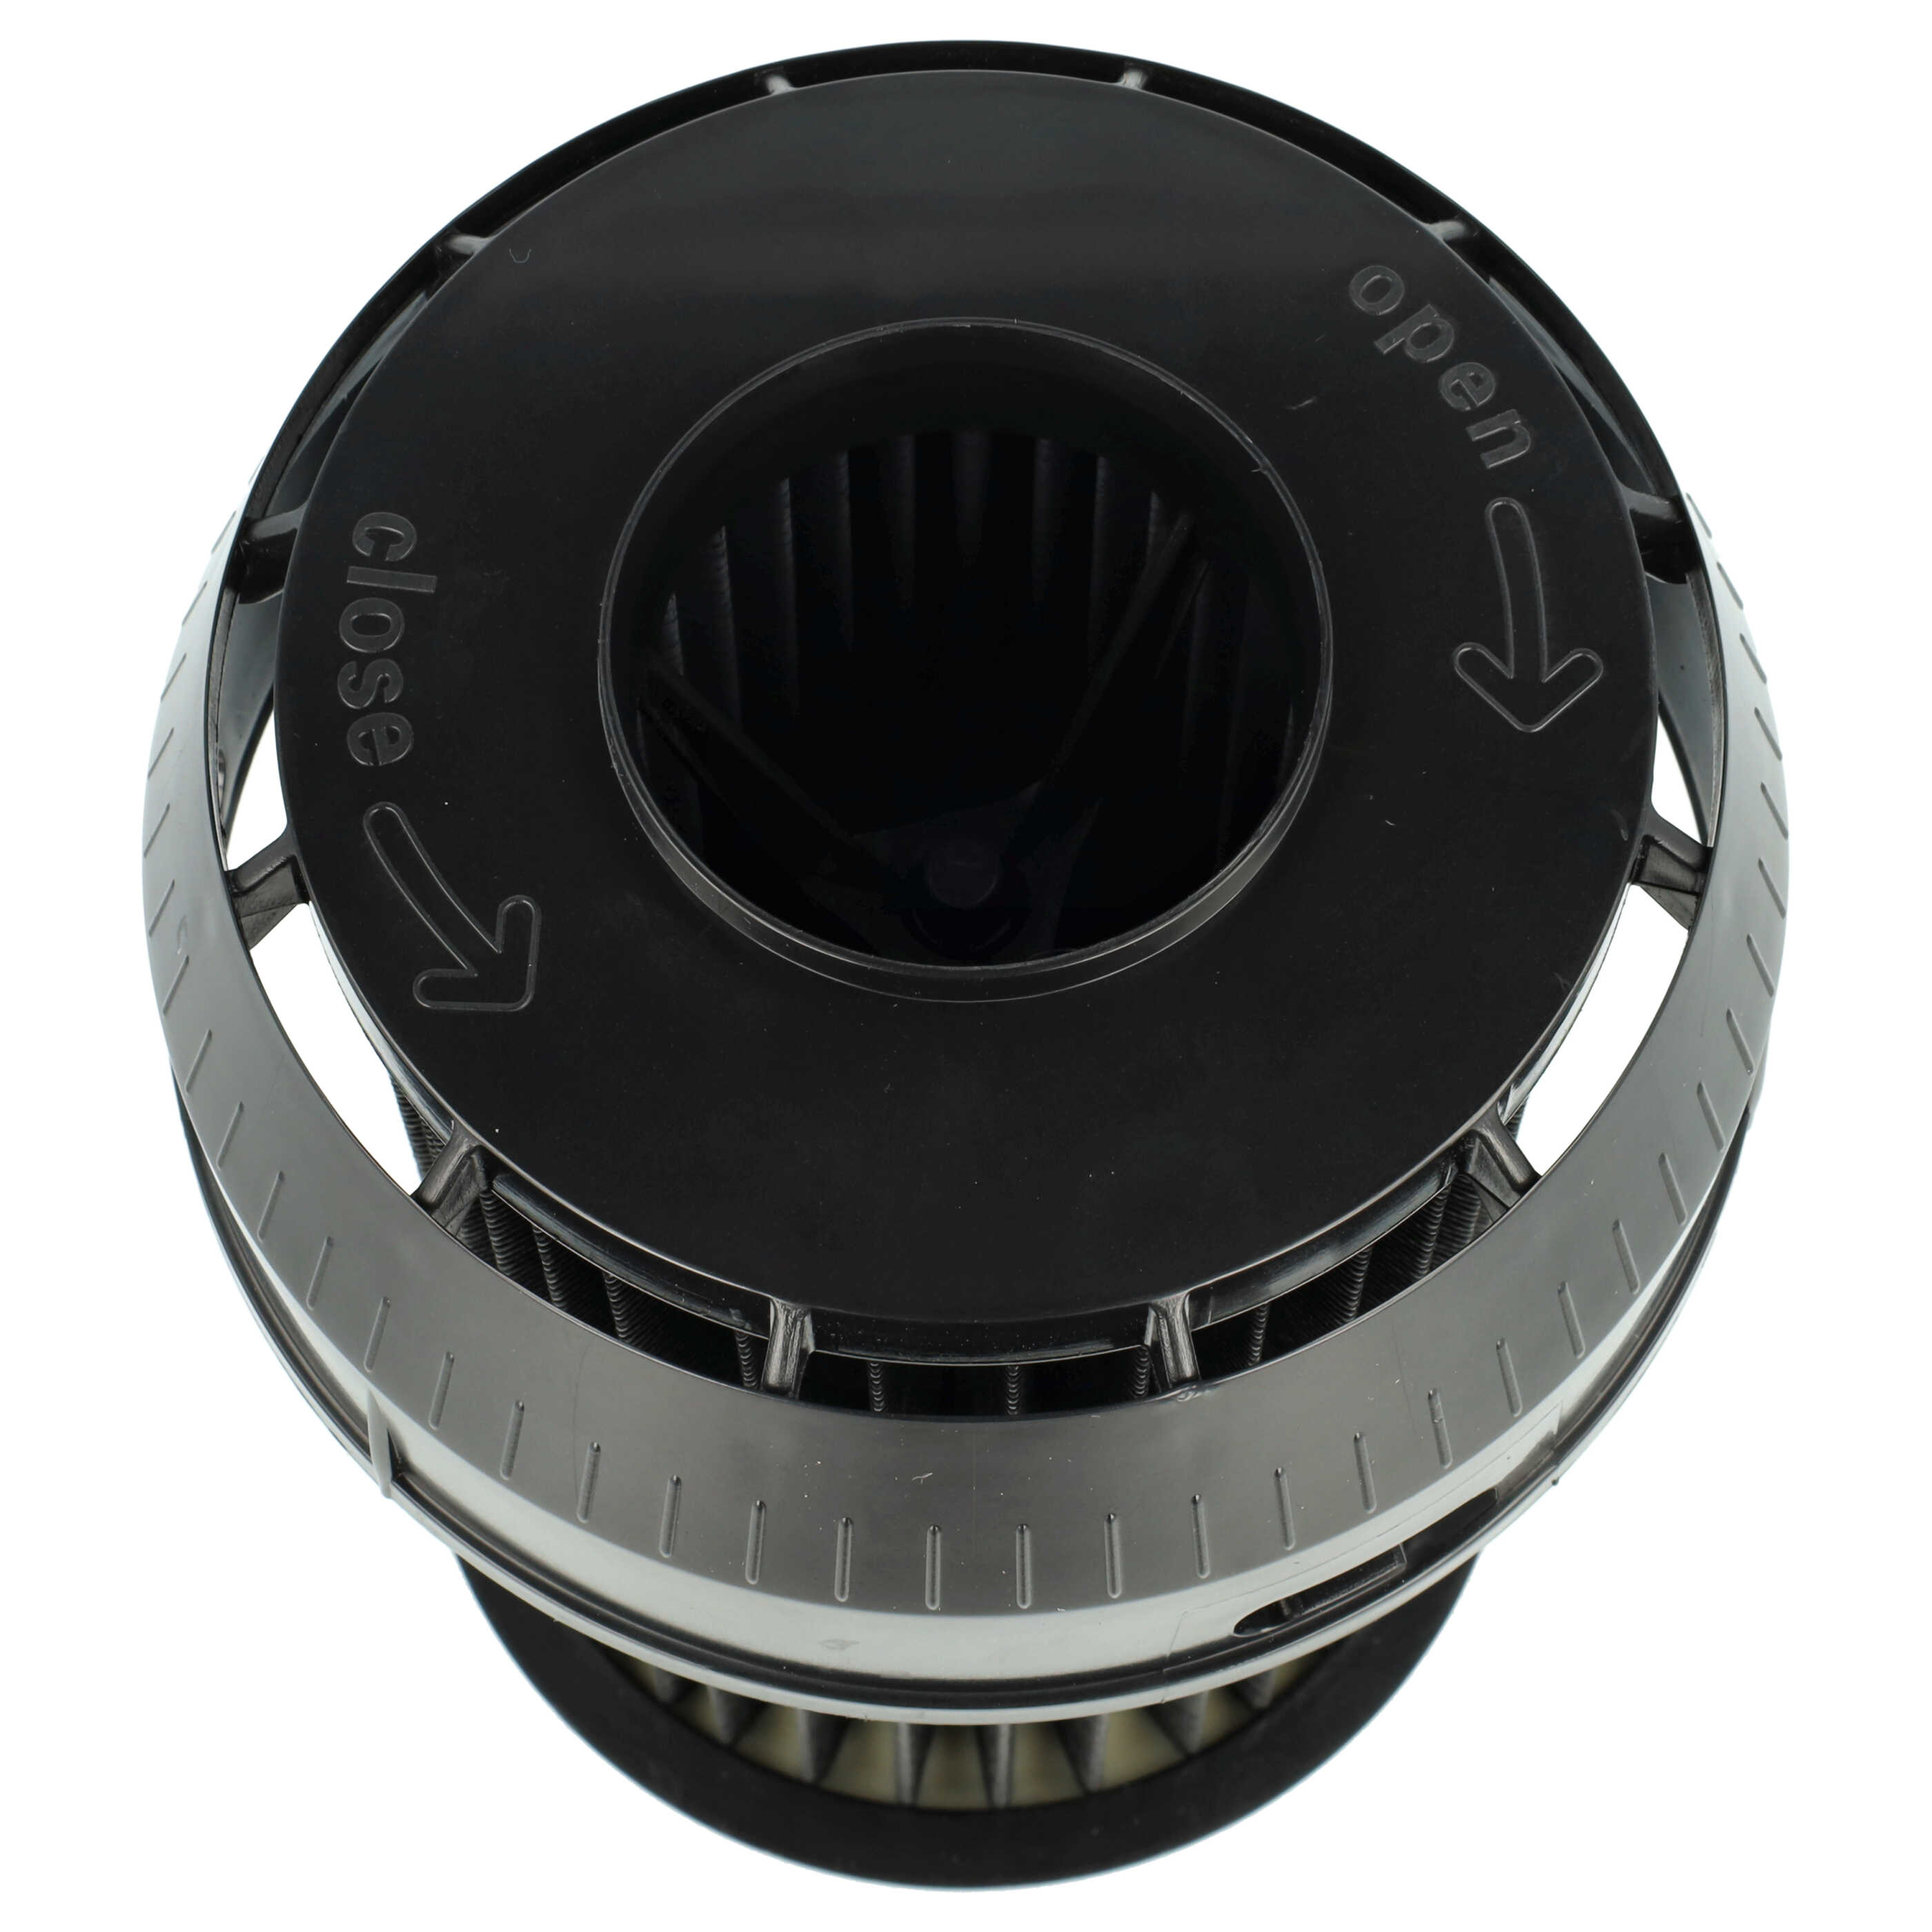 Filtre remplace Bosch 2609256d46, 00649841 pour aspirateur - filtre à lamelles